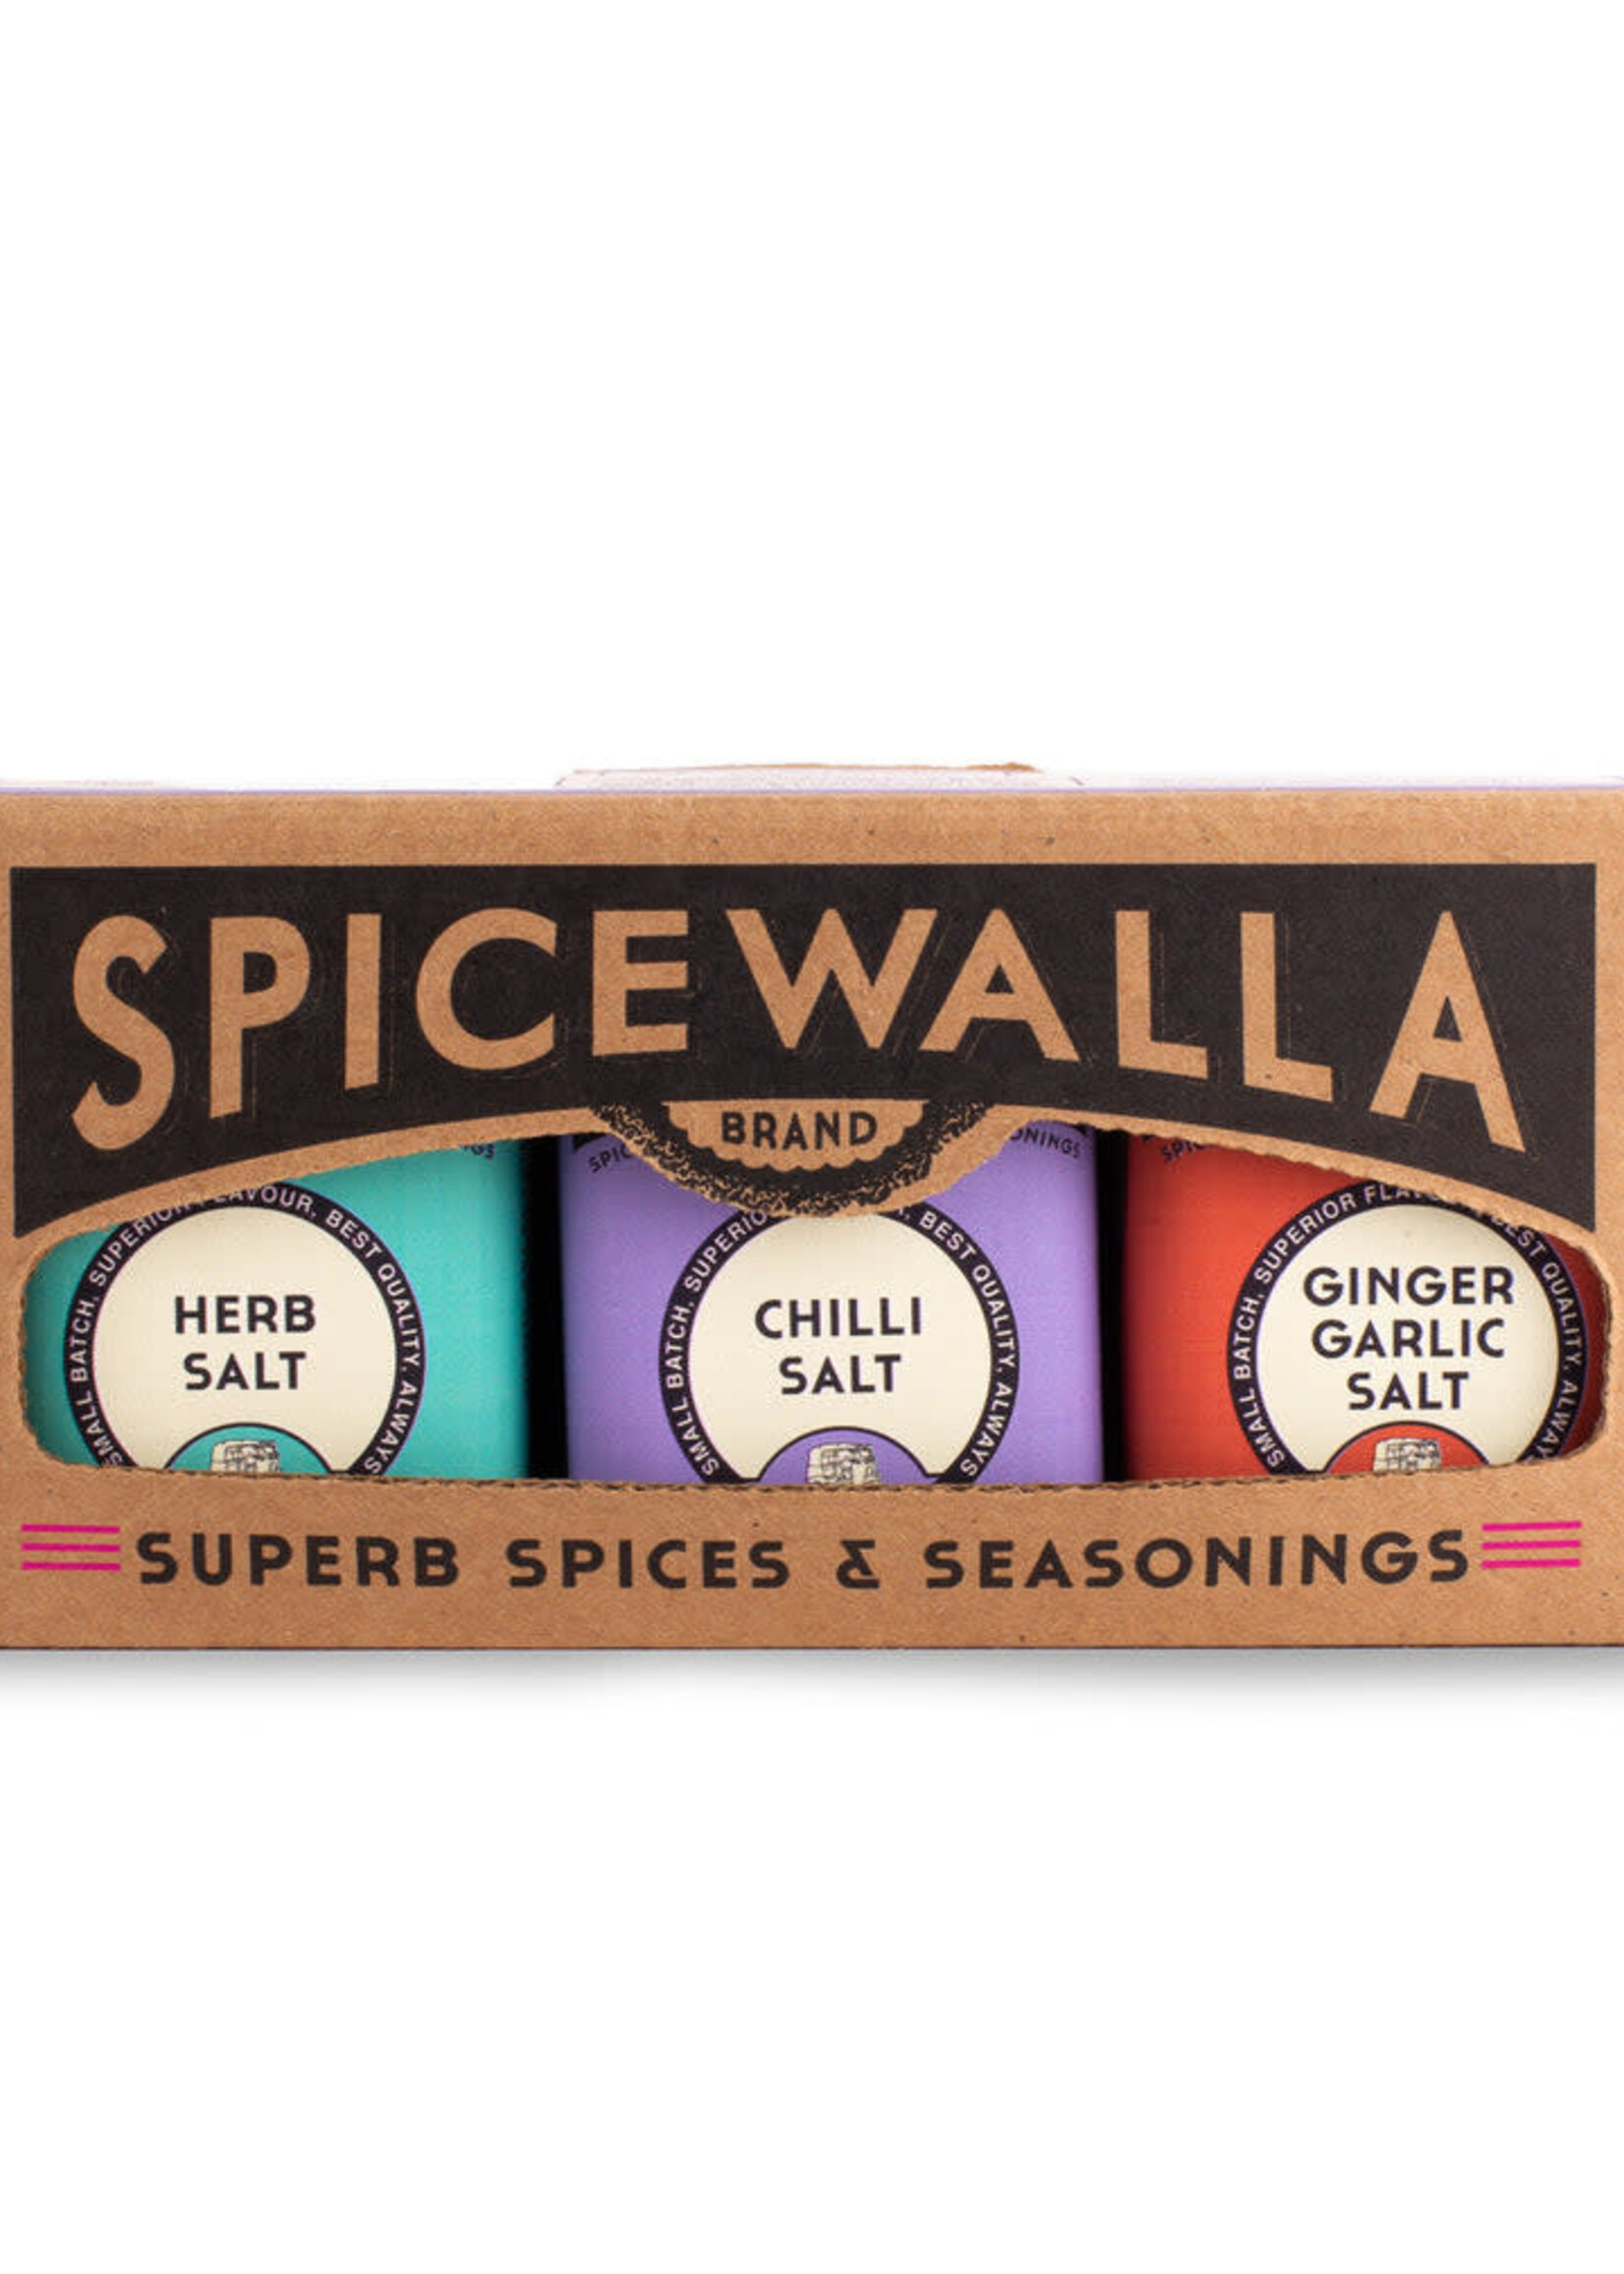 Spicewalla Spicewalla Fancy Finishing Salts 3Pack